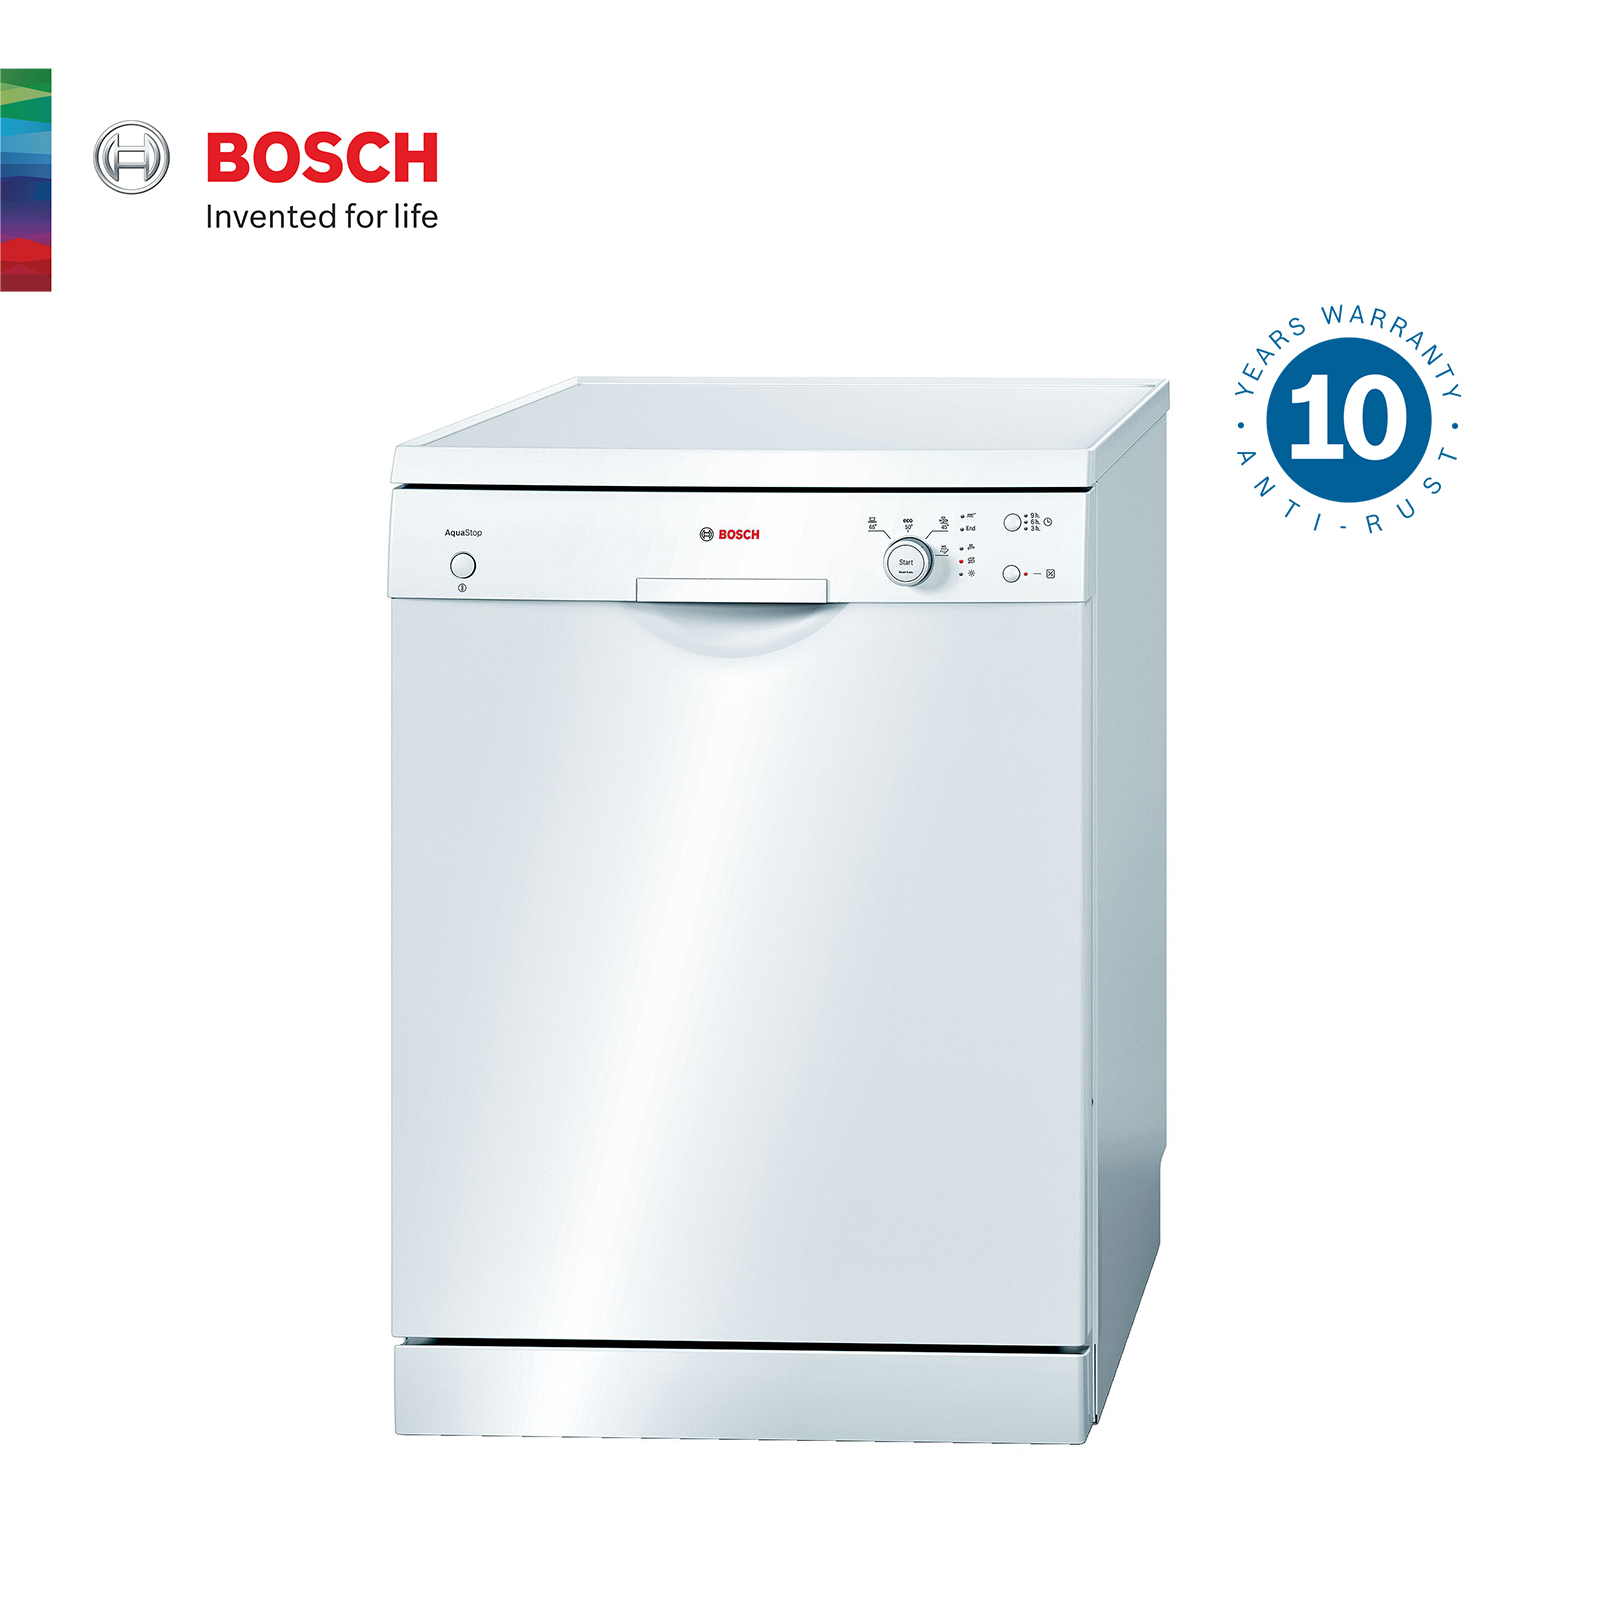 Bosch เครื่องล้างจานแบบตั้งพื้น ขนาด 60 cm สีขาว รุ่น SMS40E32EU